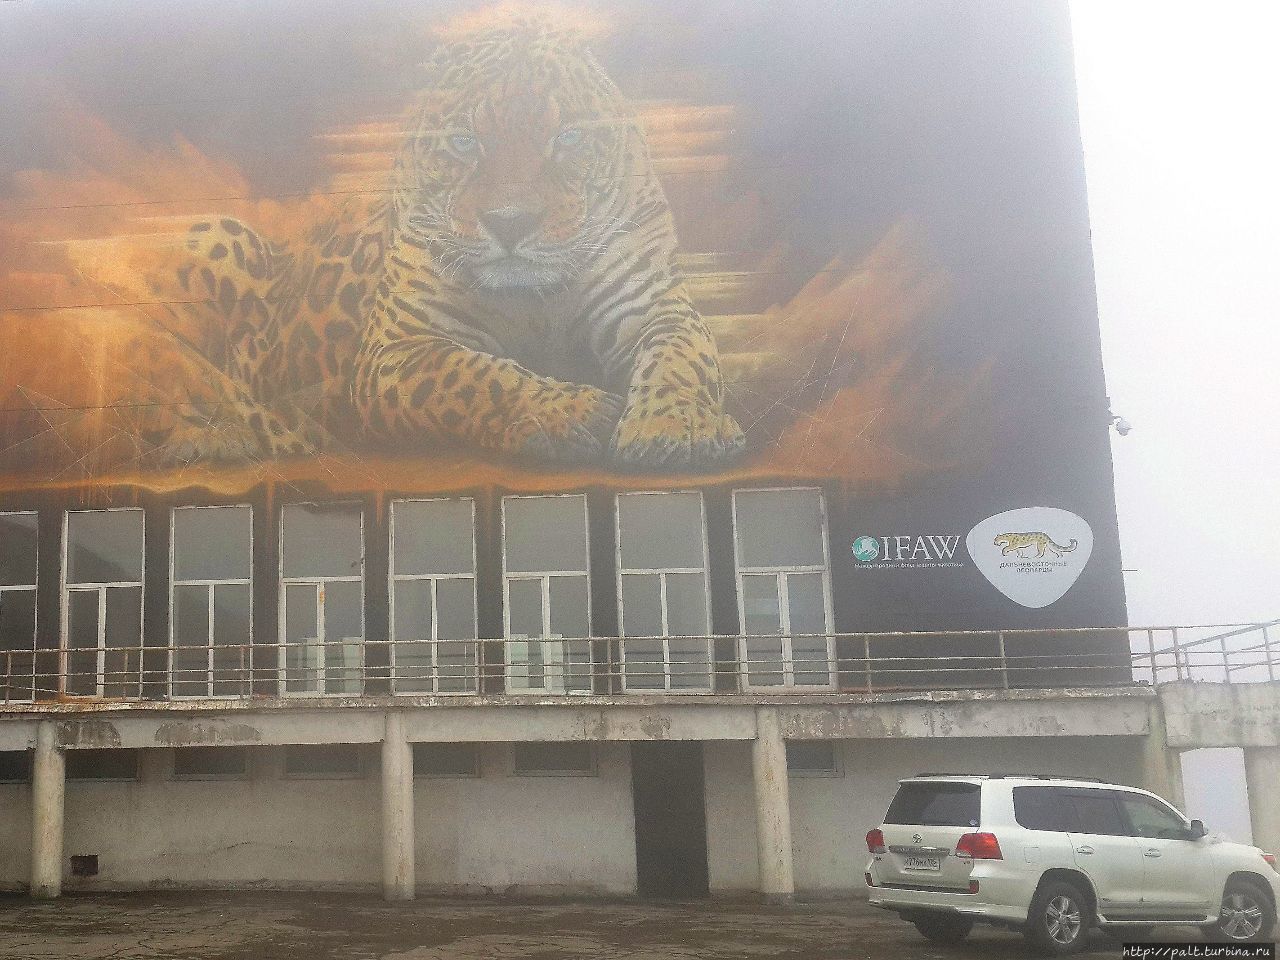 10 августа 2017 года, южноафриканский художник  Sonny завершил работу над гигантским граффити дальневосточного леопарда на стене корпуса ДВФУ. А это легендарный зверь в июньском тумане  2018 года Протарас, Кипр